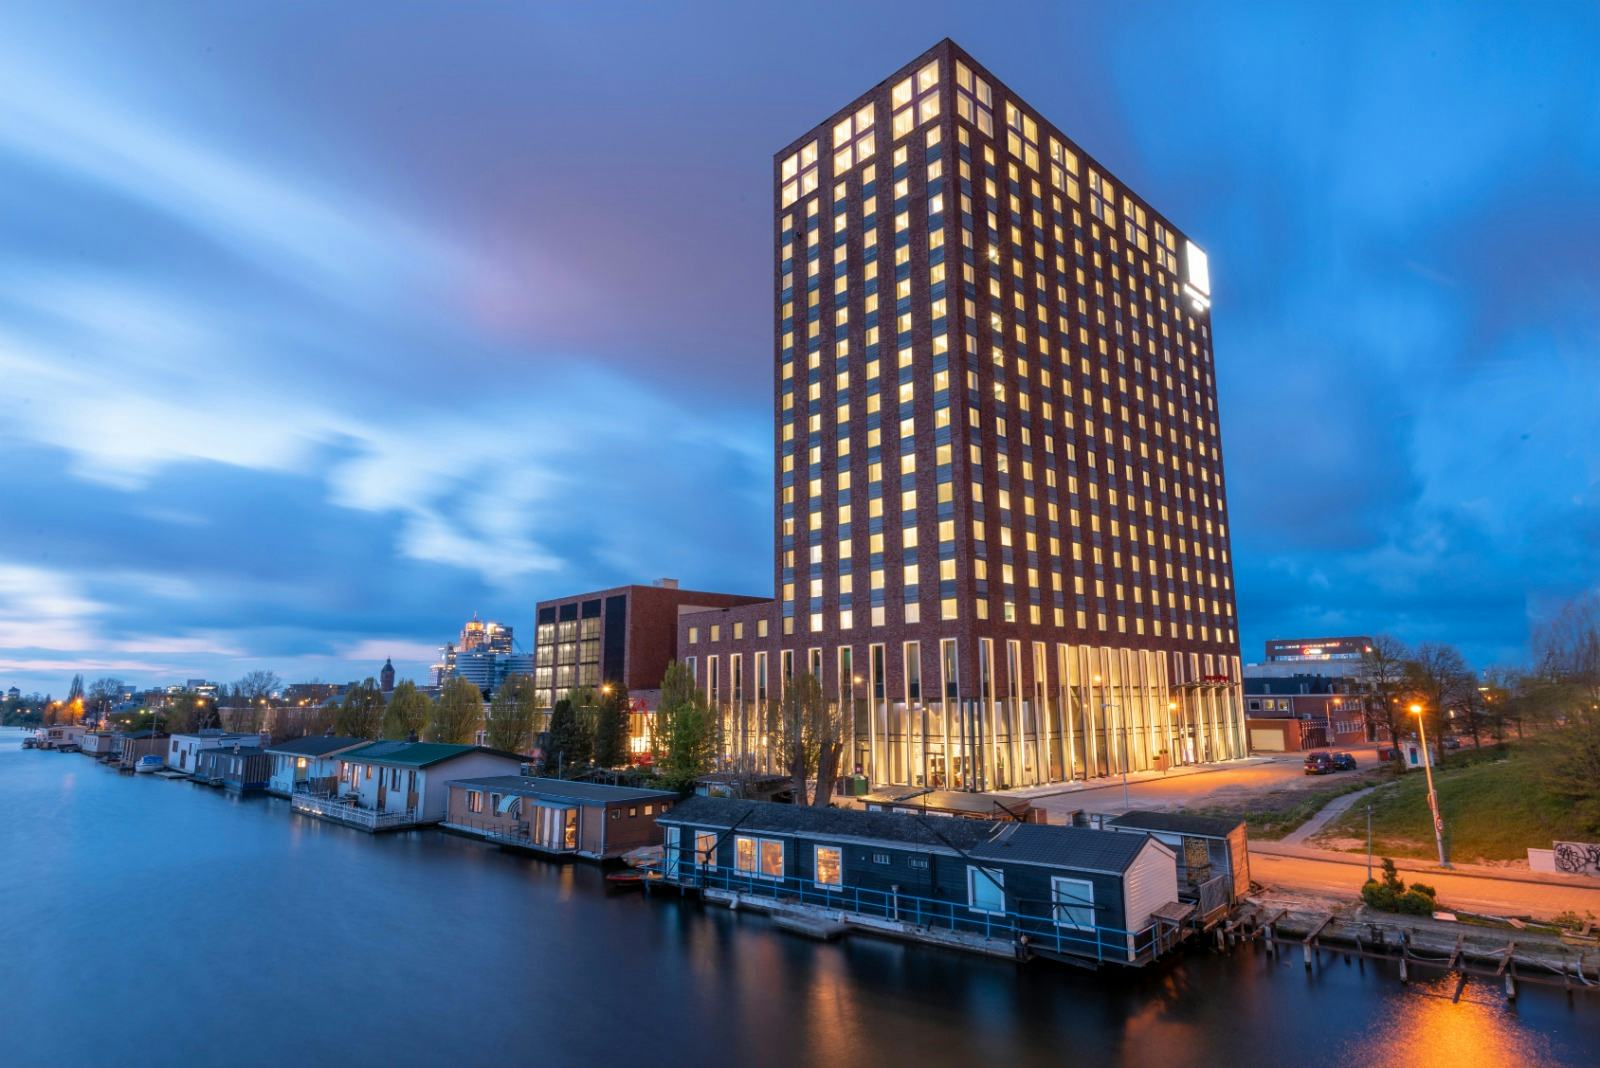 Eerste Leonardo Royal Hotel van Nederland open